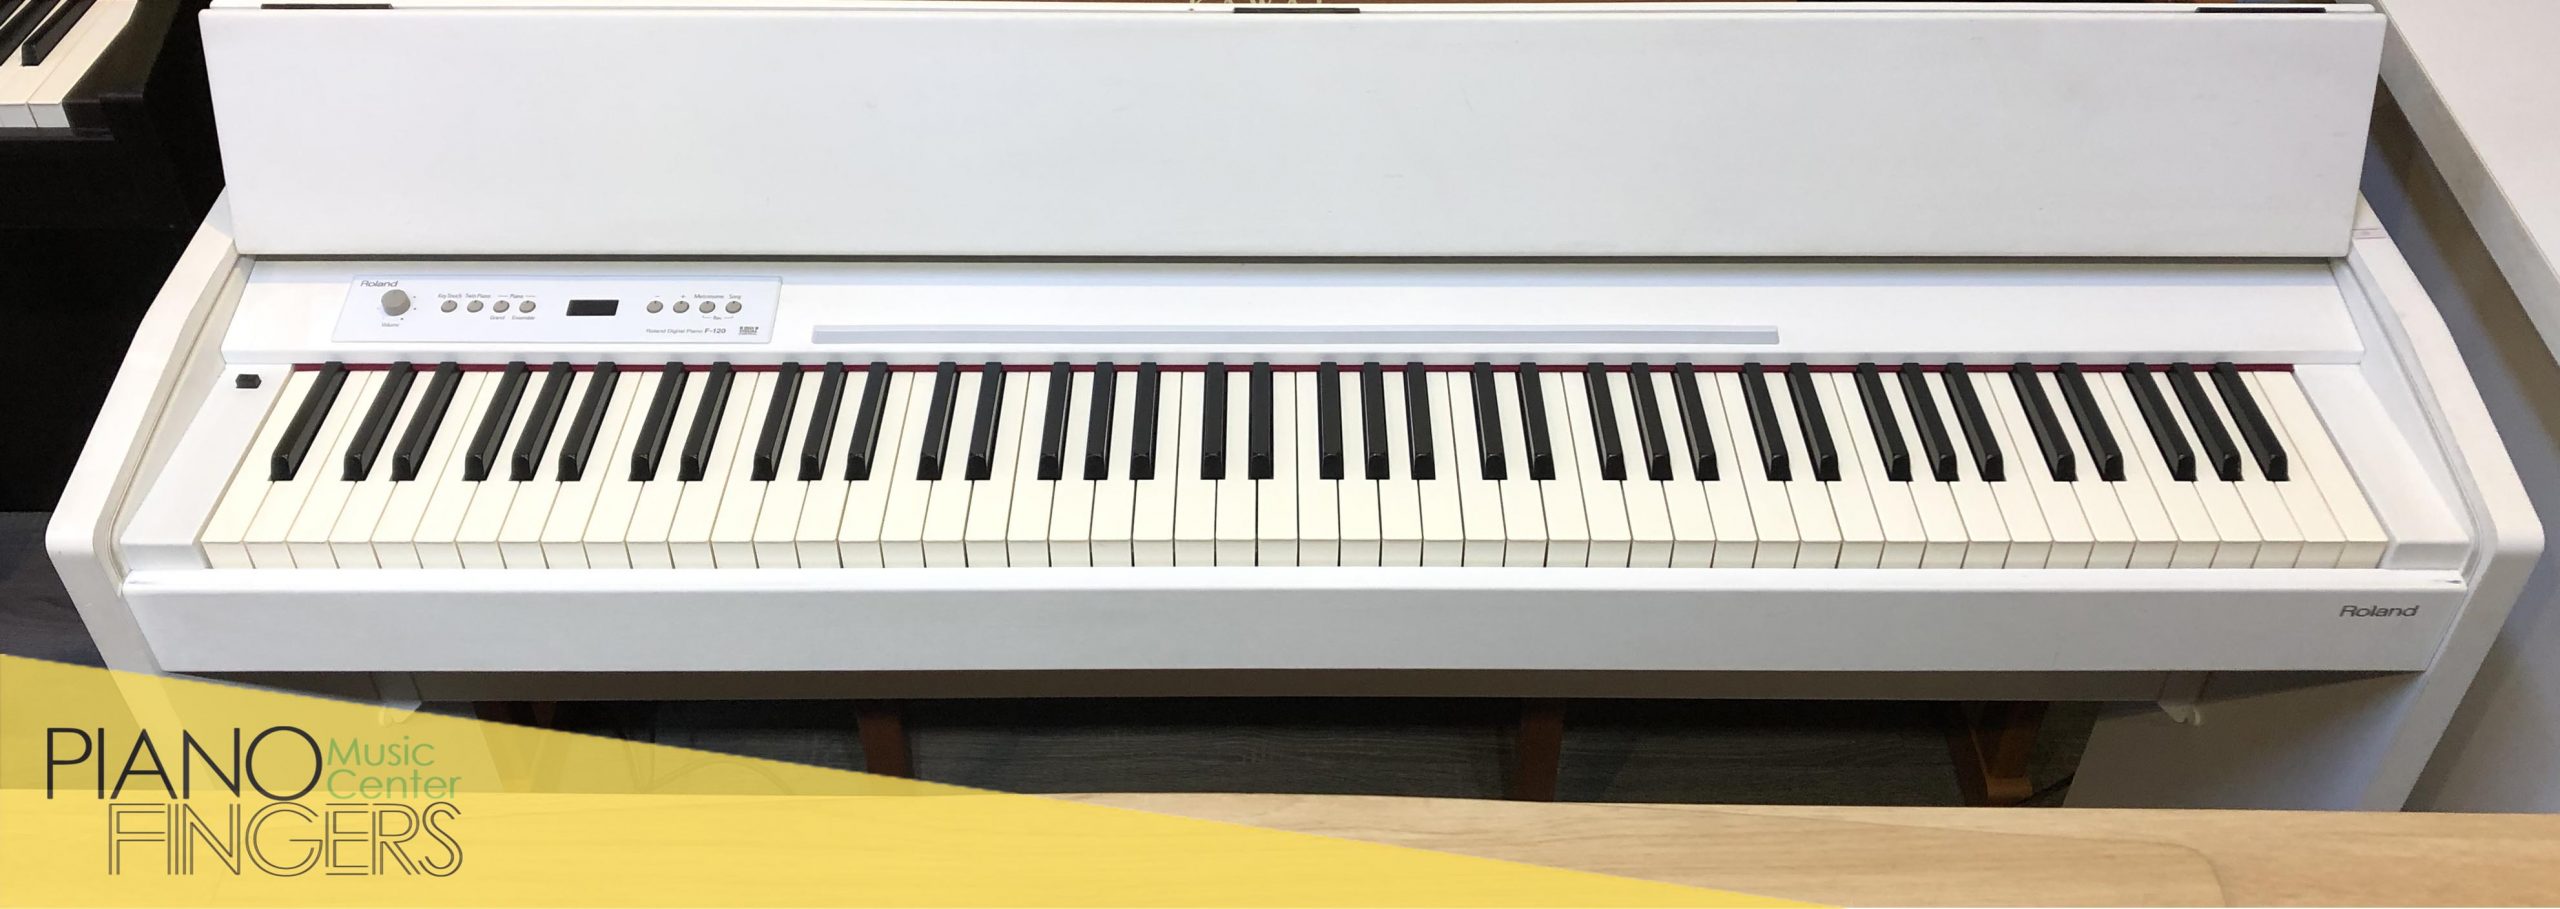 piano điện roland f-120